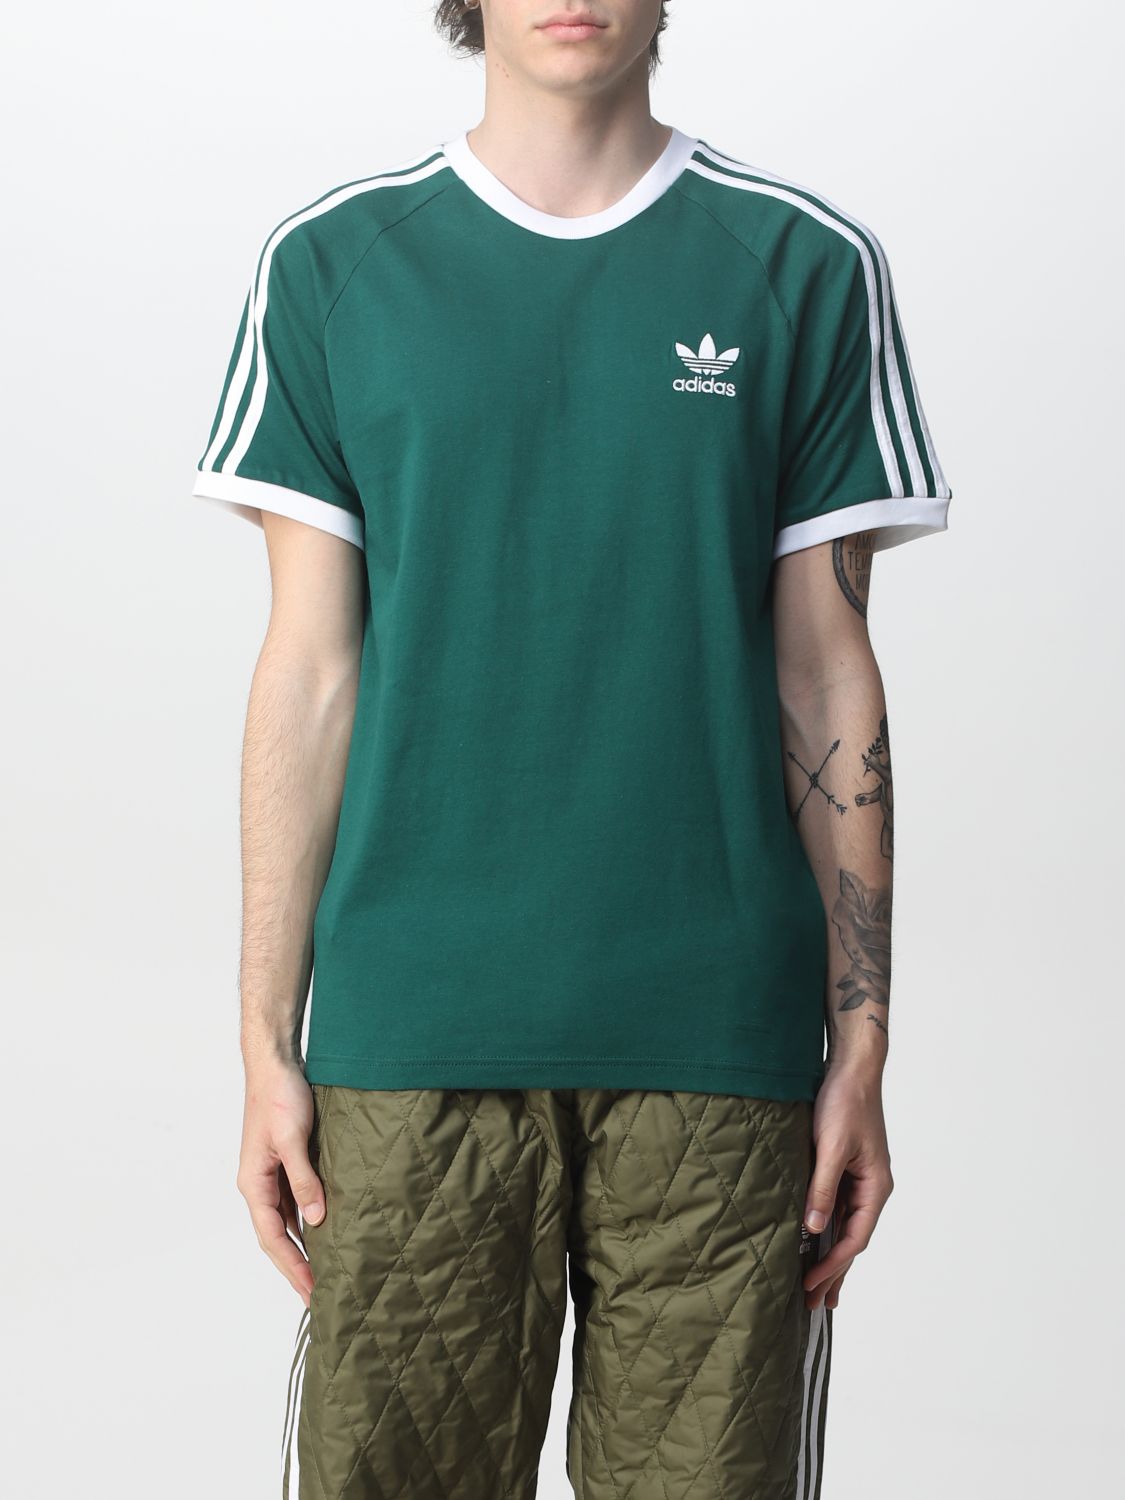 cargando chico Antecedente ADIDAS ORIGINALS: Camiseta para hombre, Verde | Camiseta Adidas Originals  HE9546 en línea en GIGLIO.COM